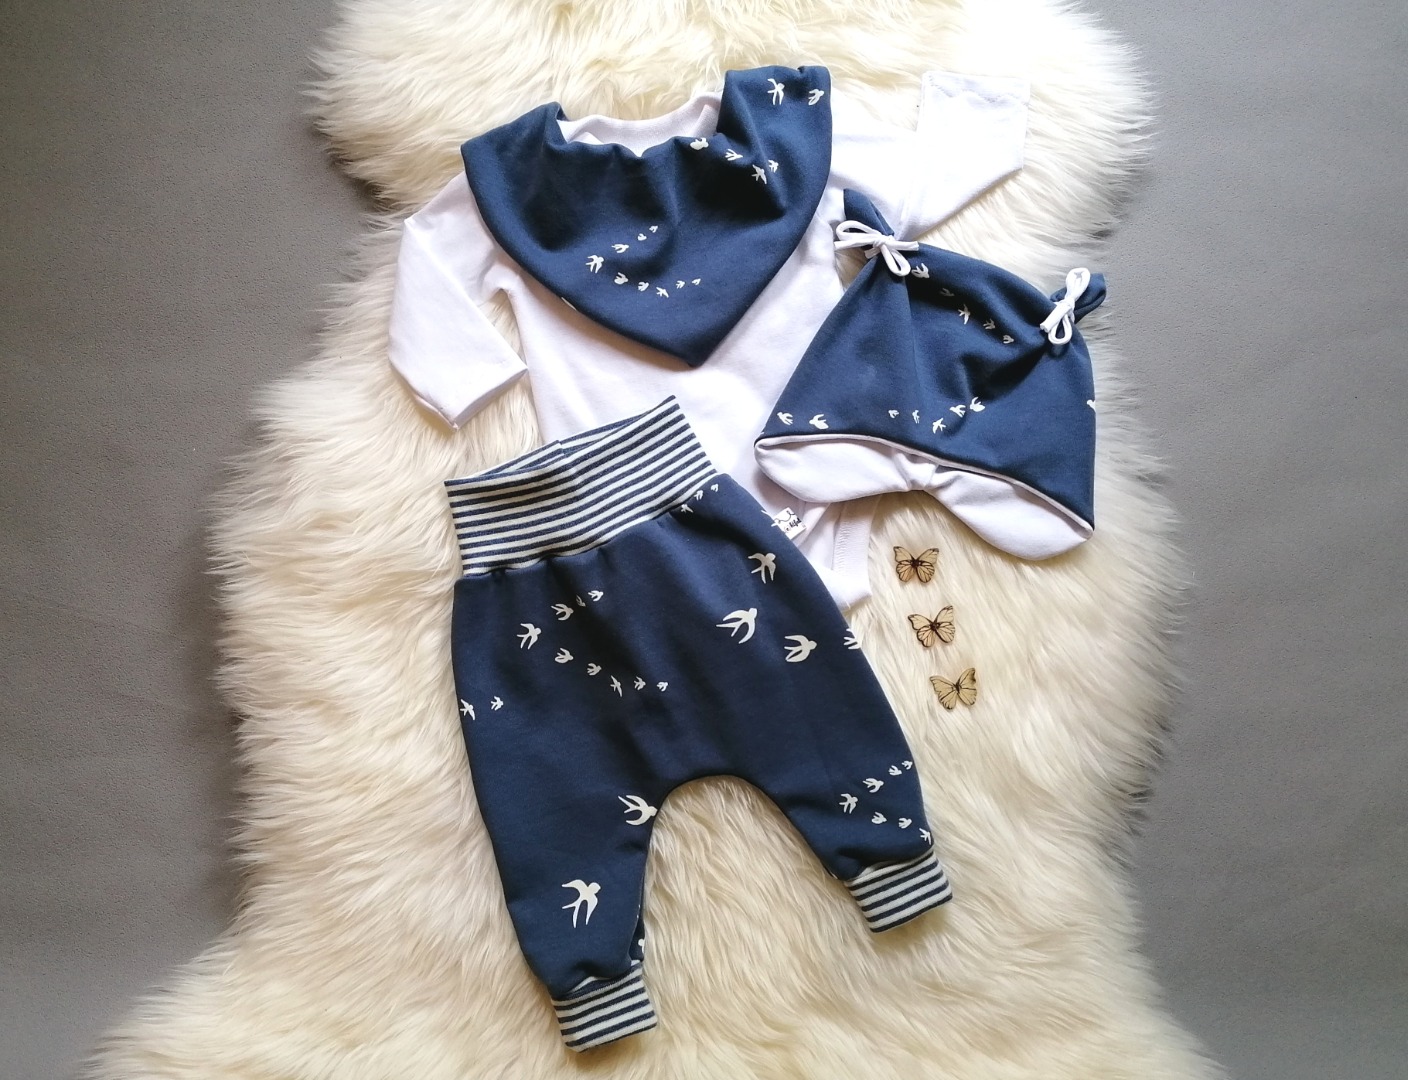 Baggypants Pumphose Mitwachshose Baby Kind Schwalben jeansblau in Wunschgröße 44 bis 92 5